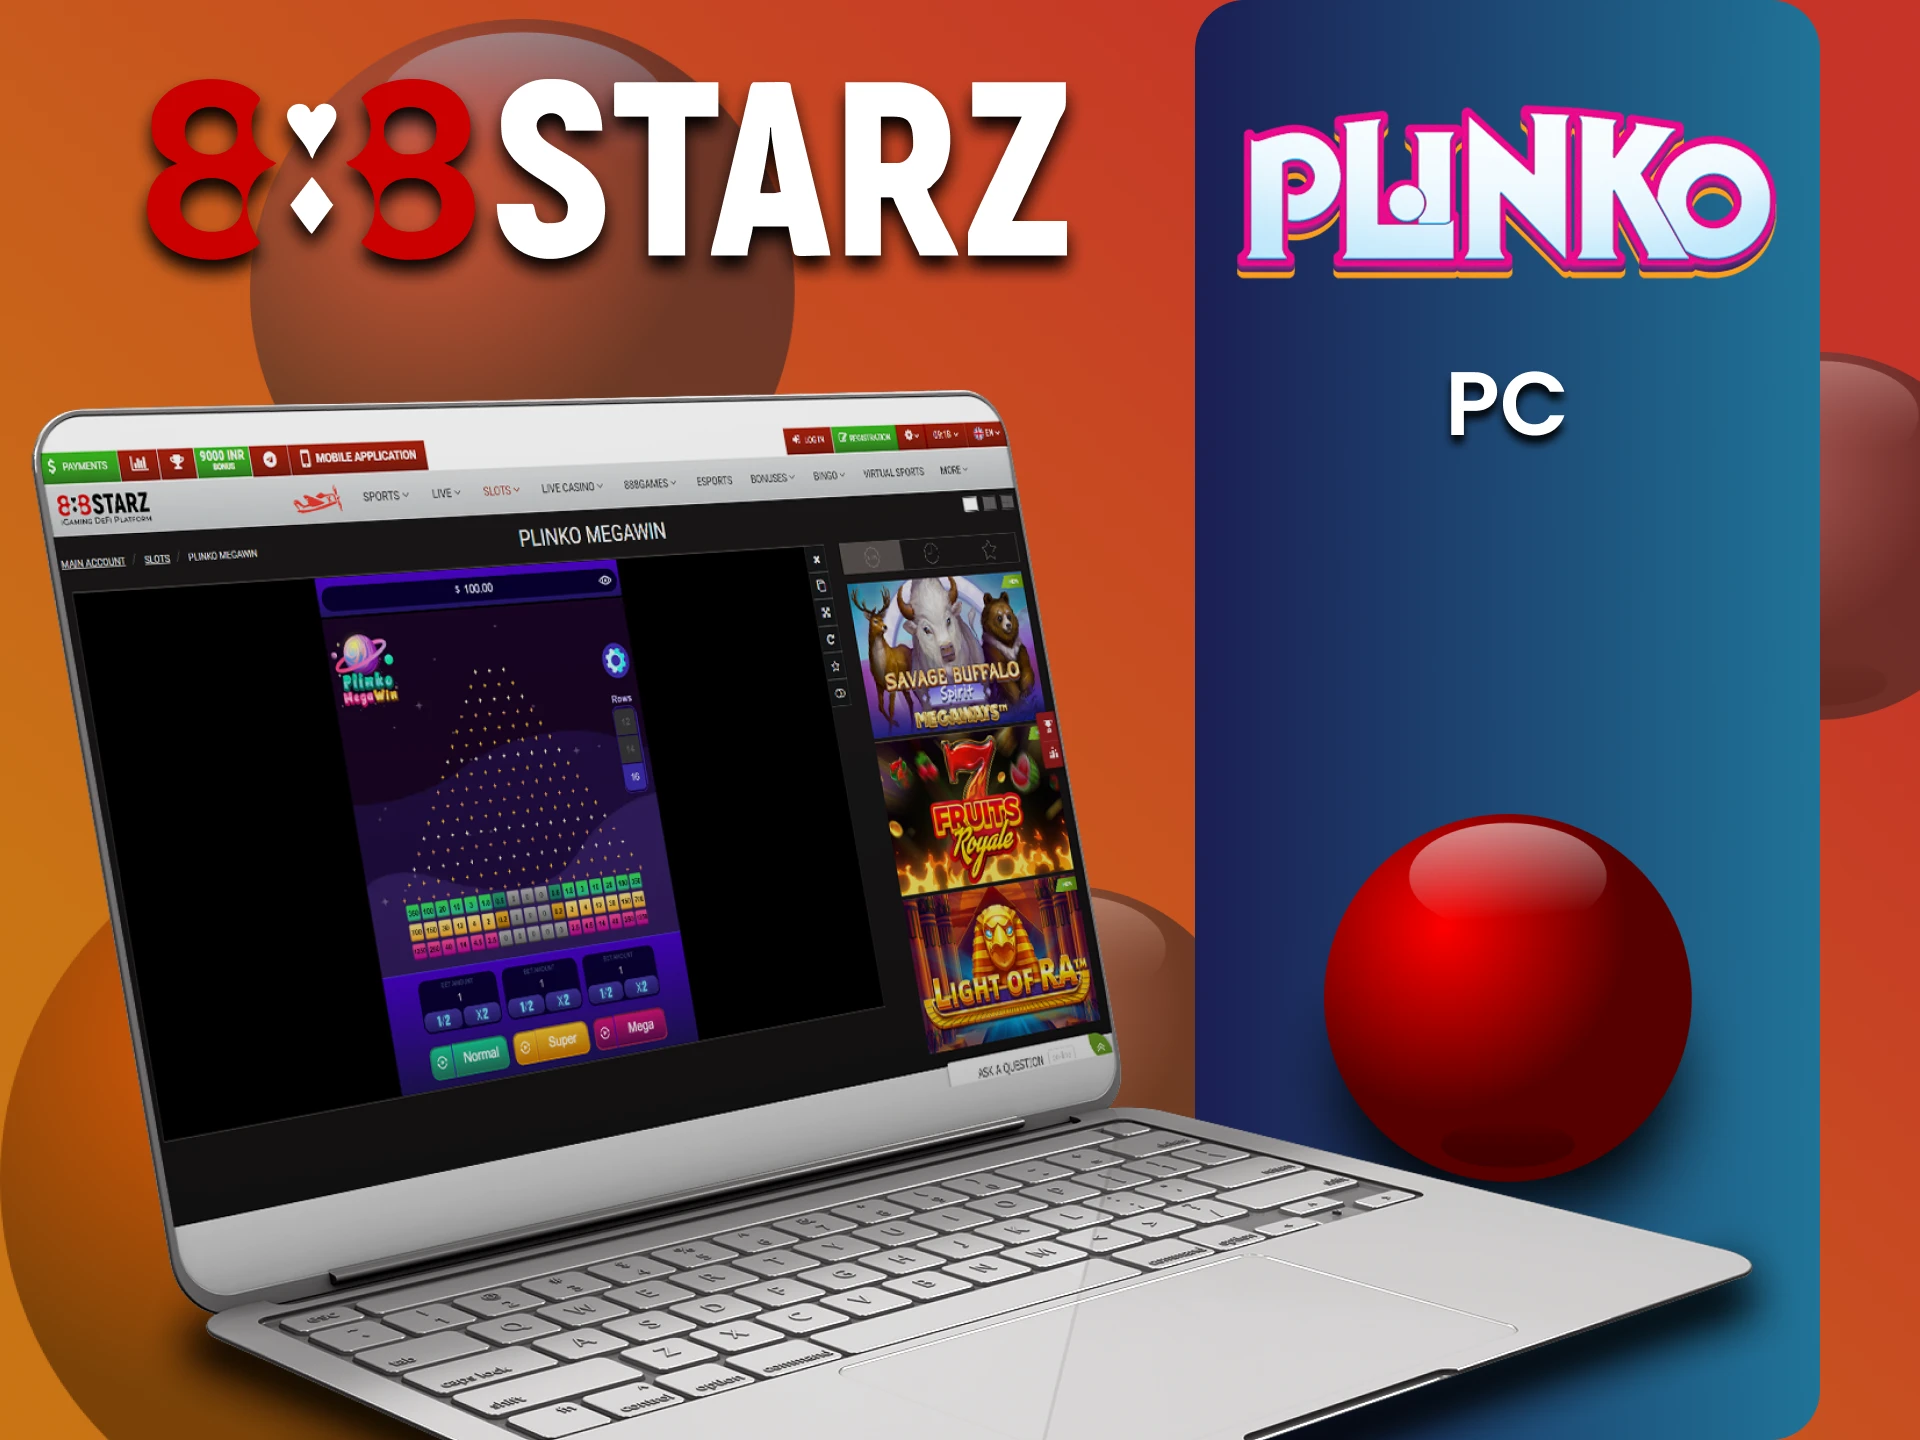 Play Plinko on 888starz for PC.